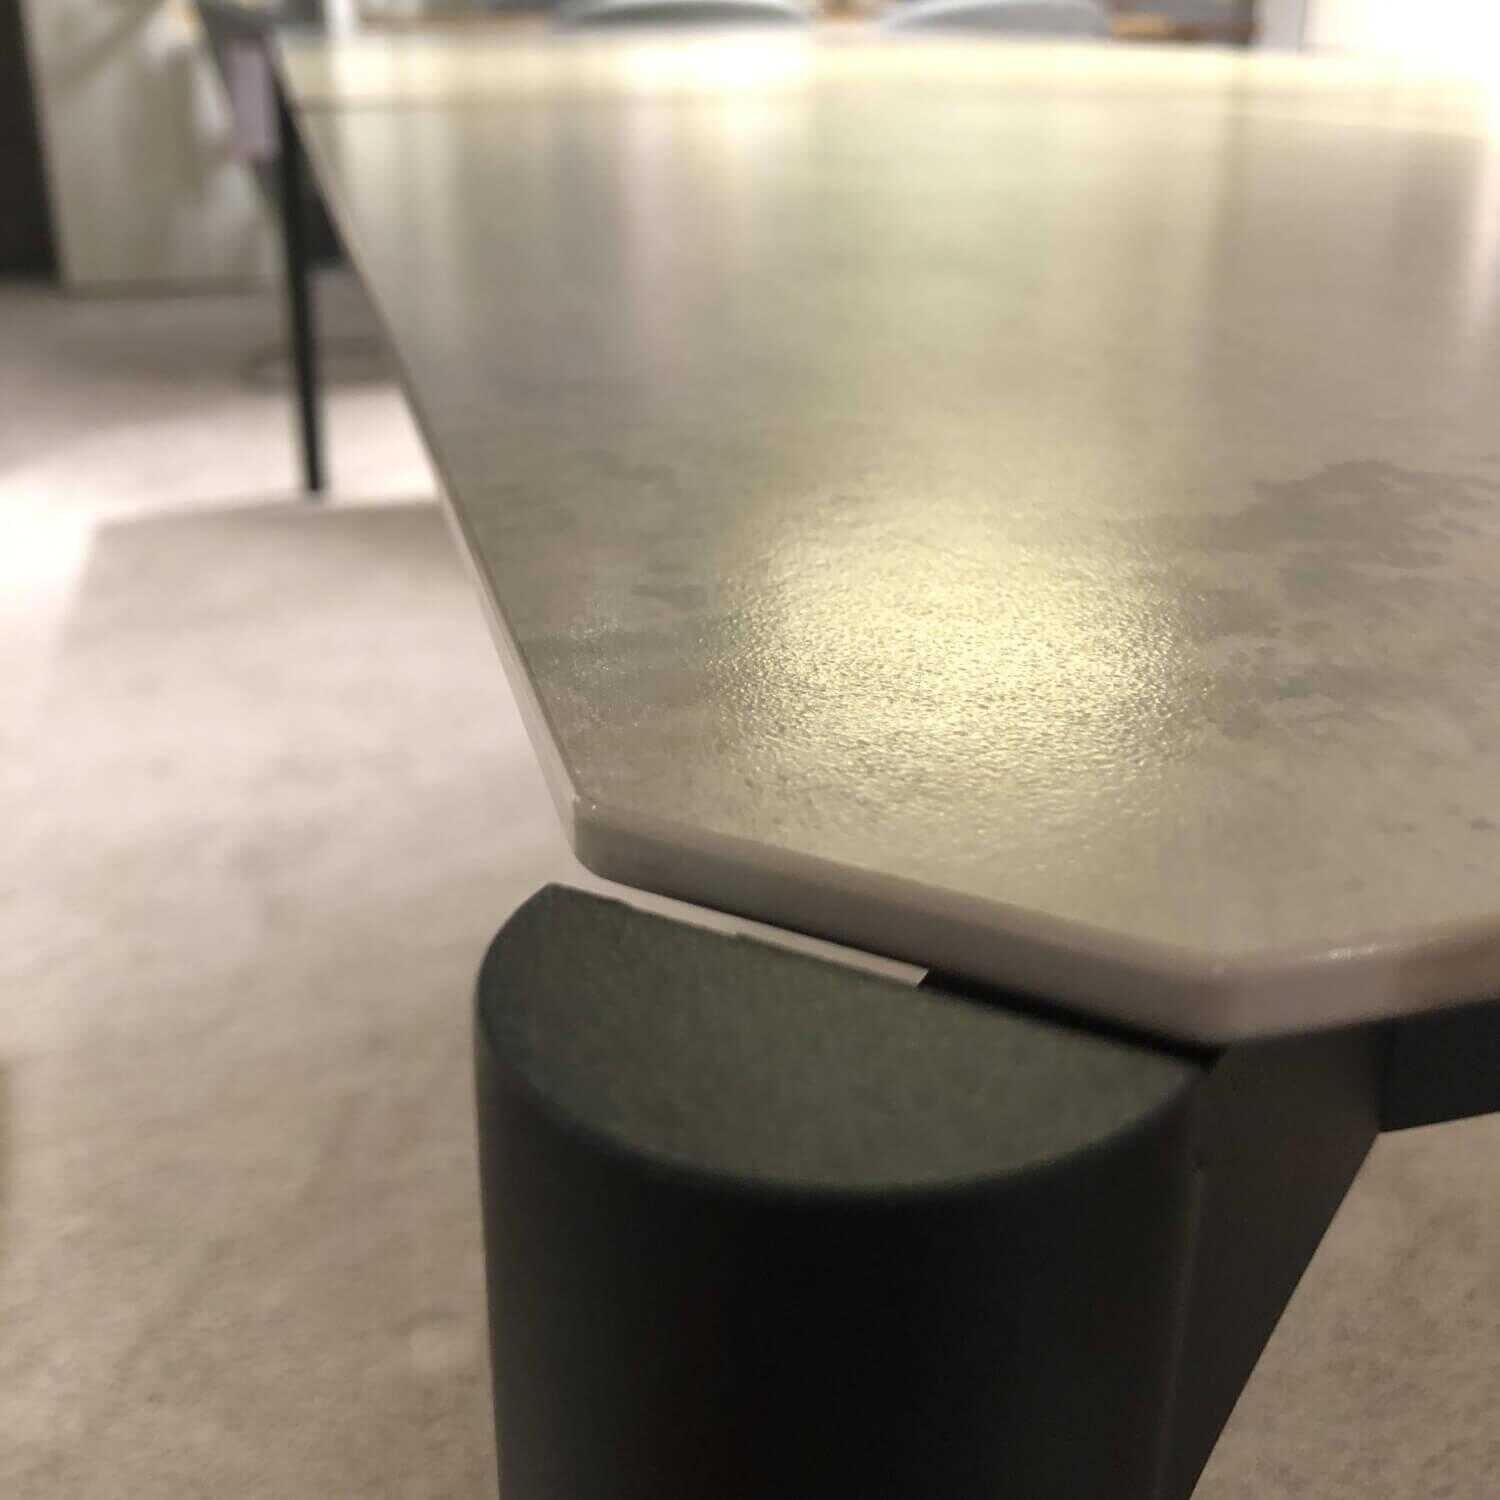 Essgruppe Tisch Ausziehbar Platte Keramik Beton mit 6 Stühlen Stoff Grau